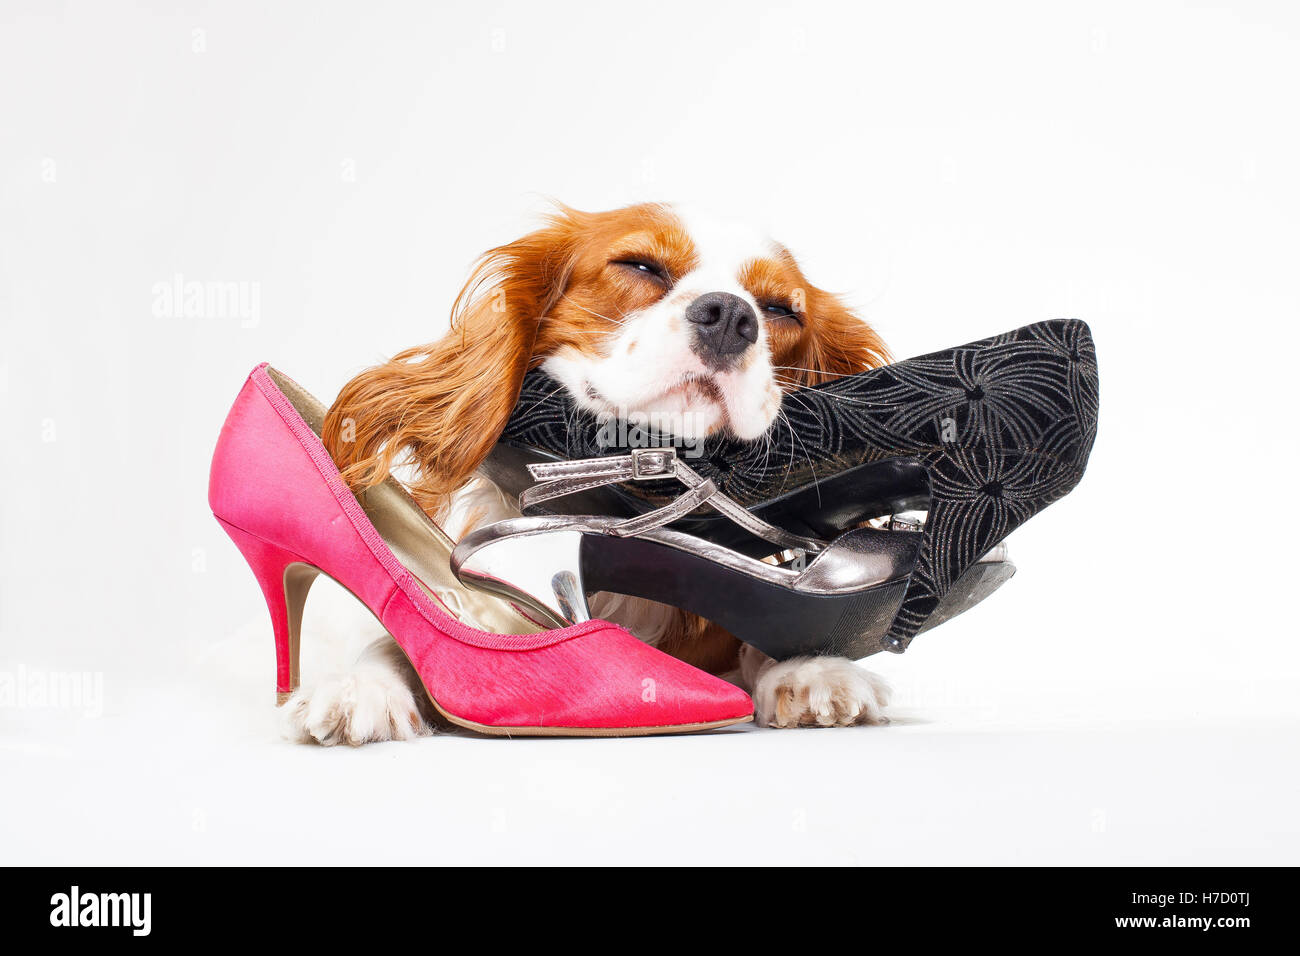 Chien avec ses chaussures. King Charles Spaniel chien avec des chaussures. High heels en studio, avec un chien. Chien avec des chaussures. Chien avec des talons hauts. Cavalier King Charles Spaniel Banque D'Images